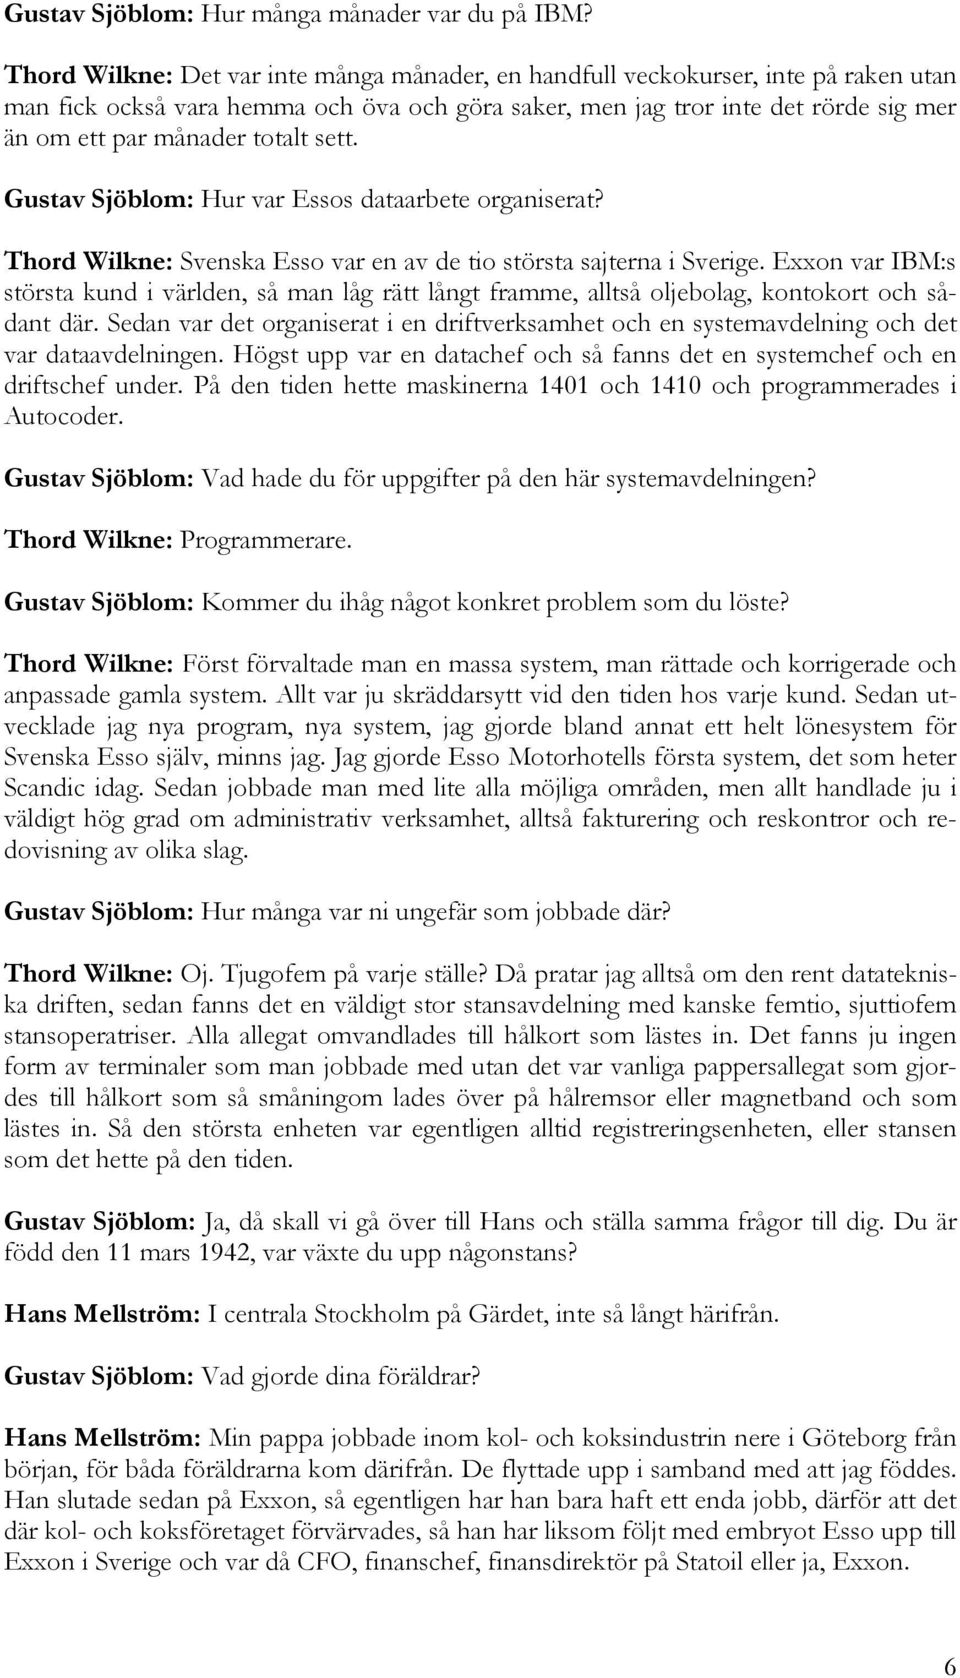 totalt sett. Gustav Sjöblom: Hur var Essos dataarbete organiserat? Thord Wilkne: Svenska Esso var en av de tio största sajterna i Sverige.